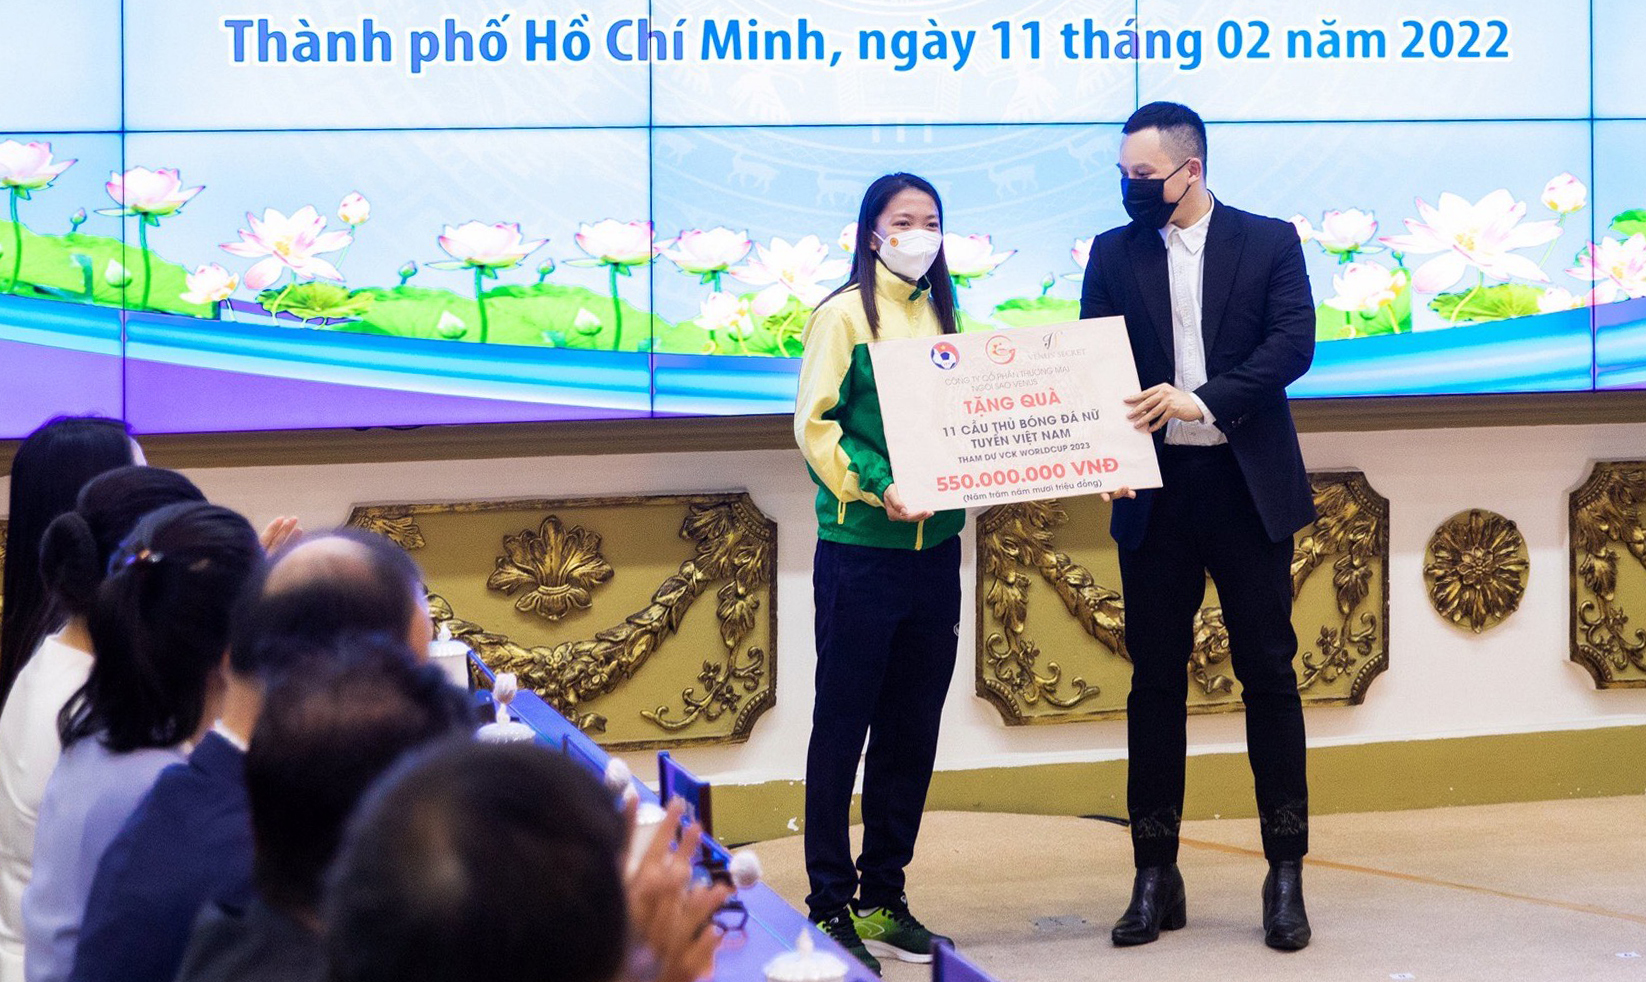 Đội trưởng Như Quỳnh thay mặt tuyển nữa Việt Nam nhận 550 triệu đồng từ Vũ Khắc Tiệp